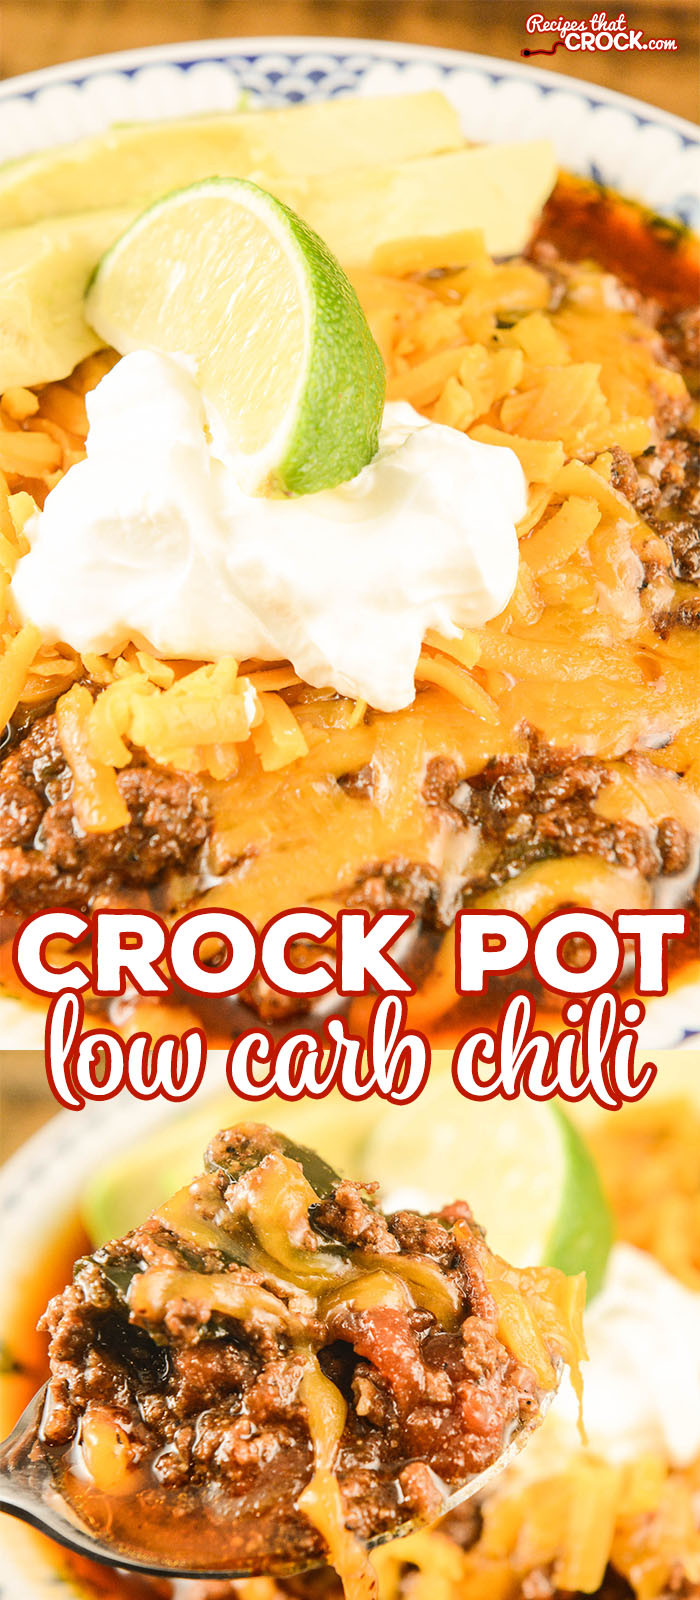 Best Low Carb Crock Pot Recipes
 Crock Pot Low Carb Chili Recipes That Crock